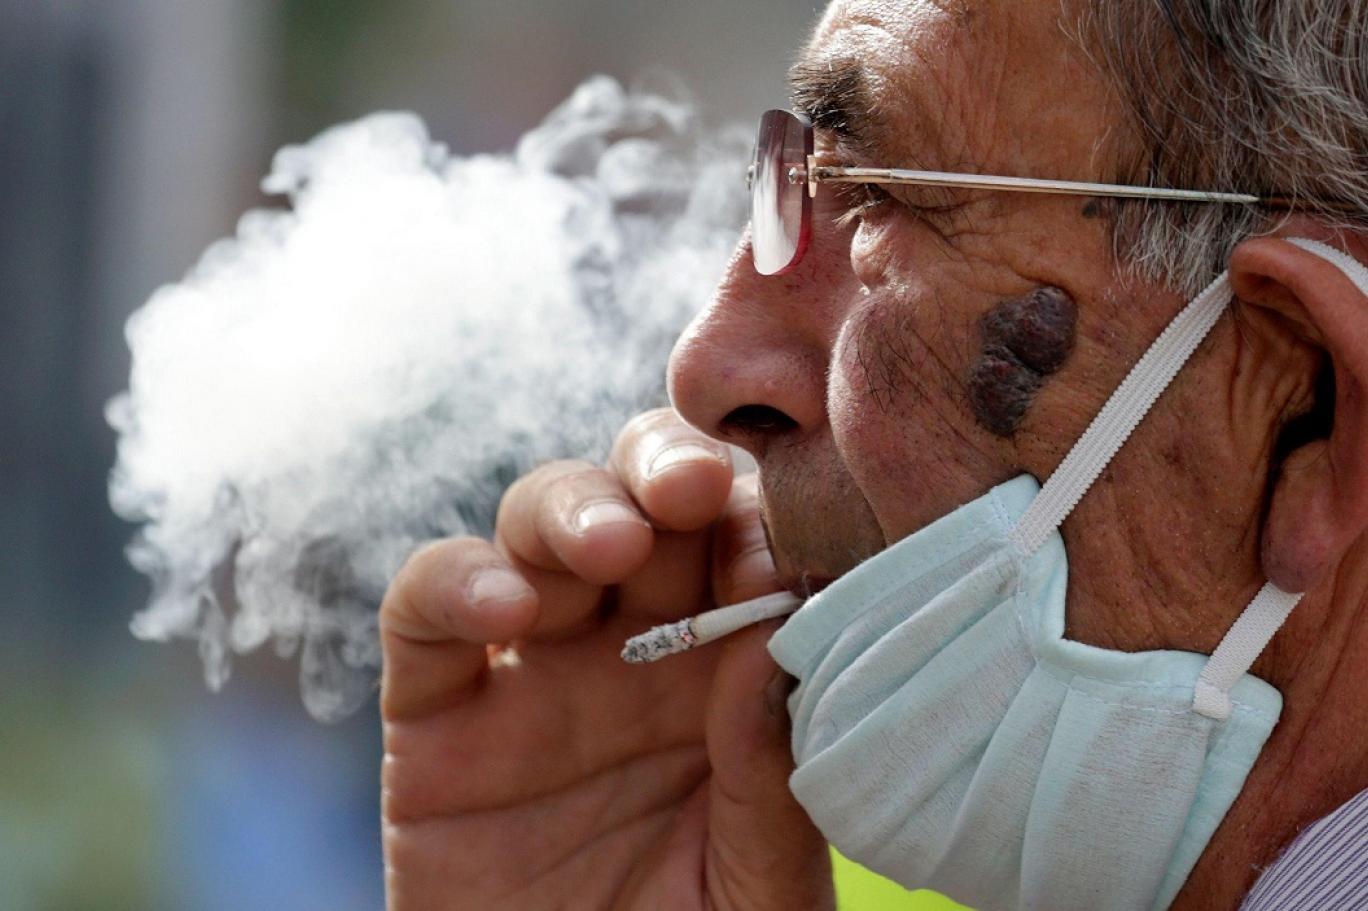 تعاطي التبغ يزيد من احتمالية انتقال فيروس كورونا